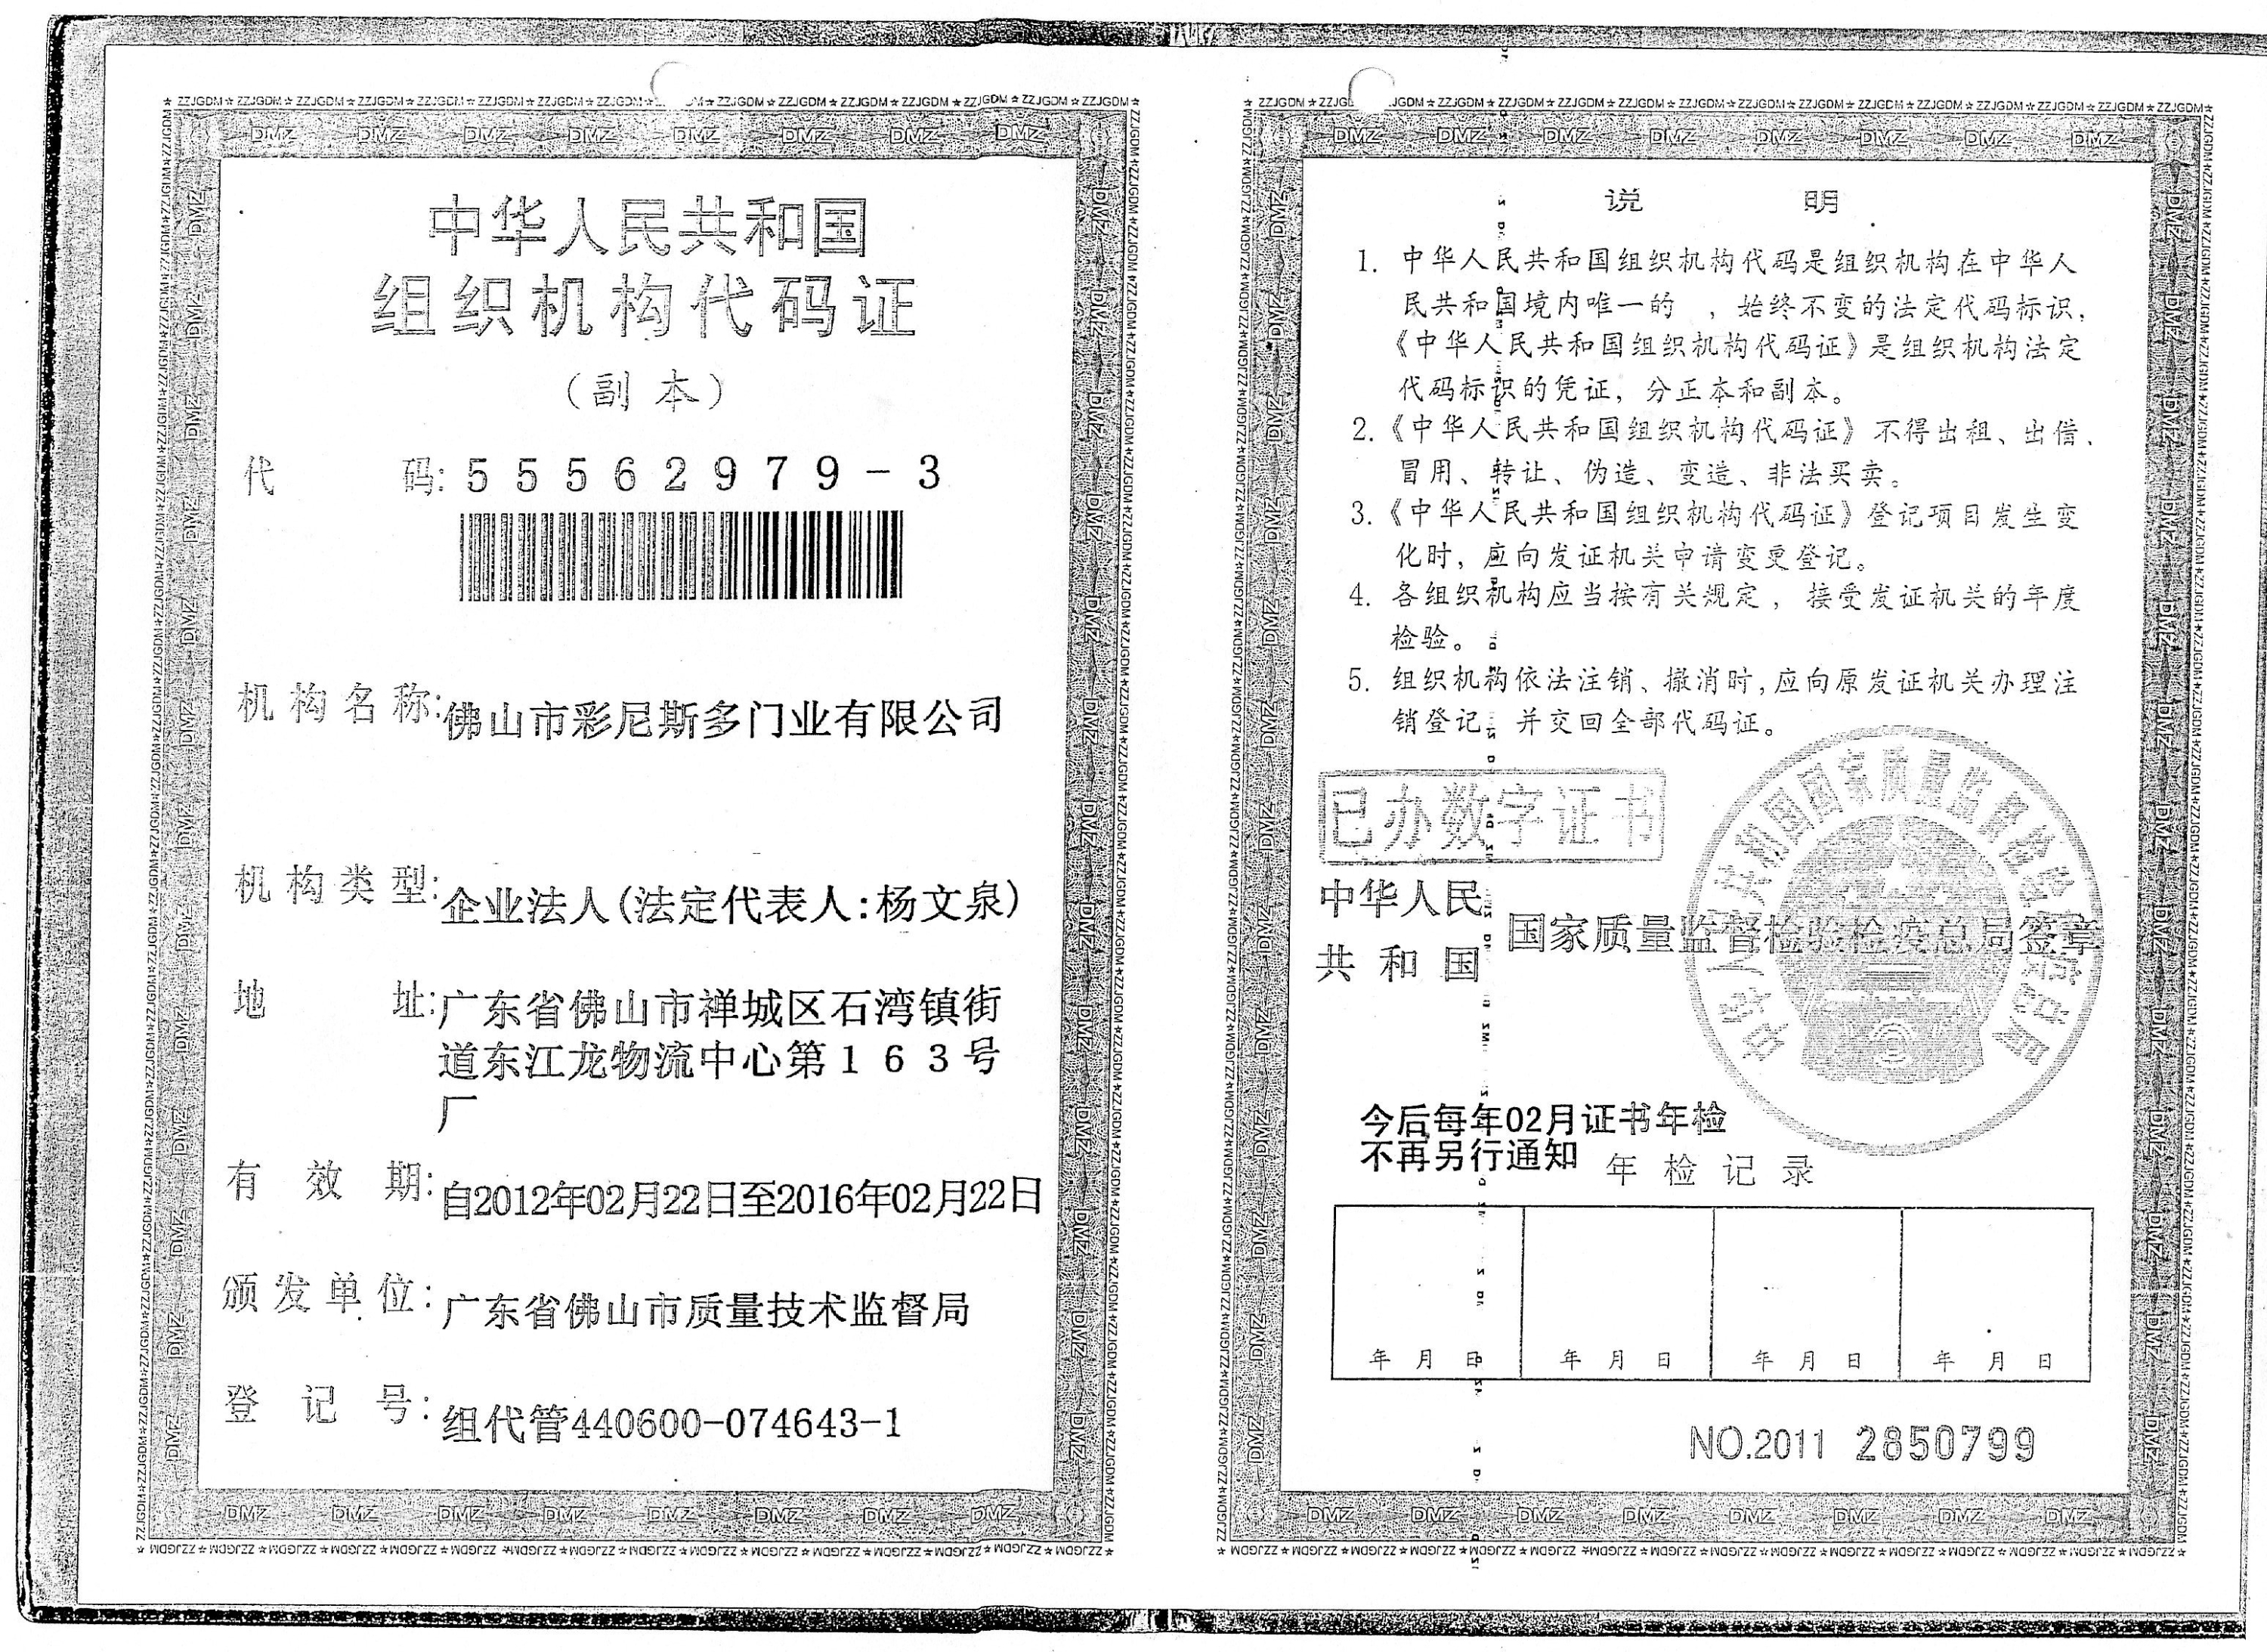 China Organization Structure Code Certificate